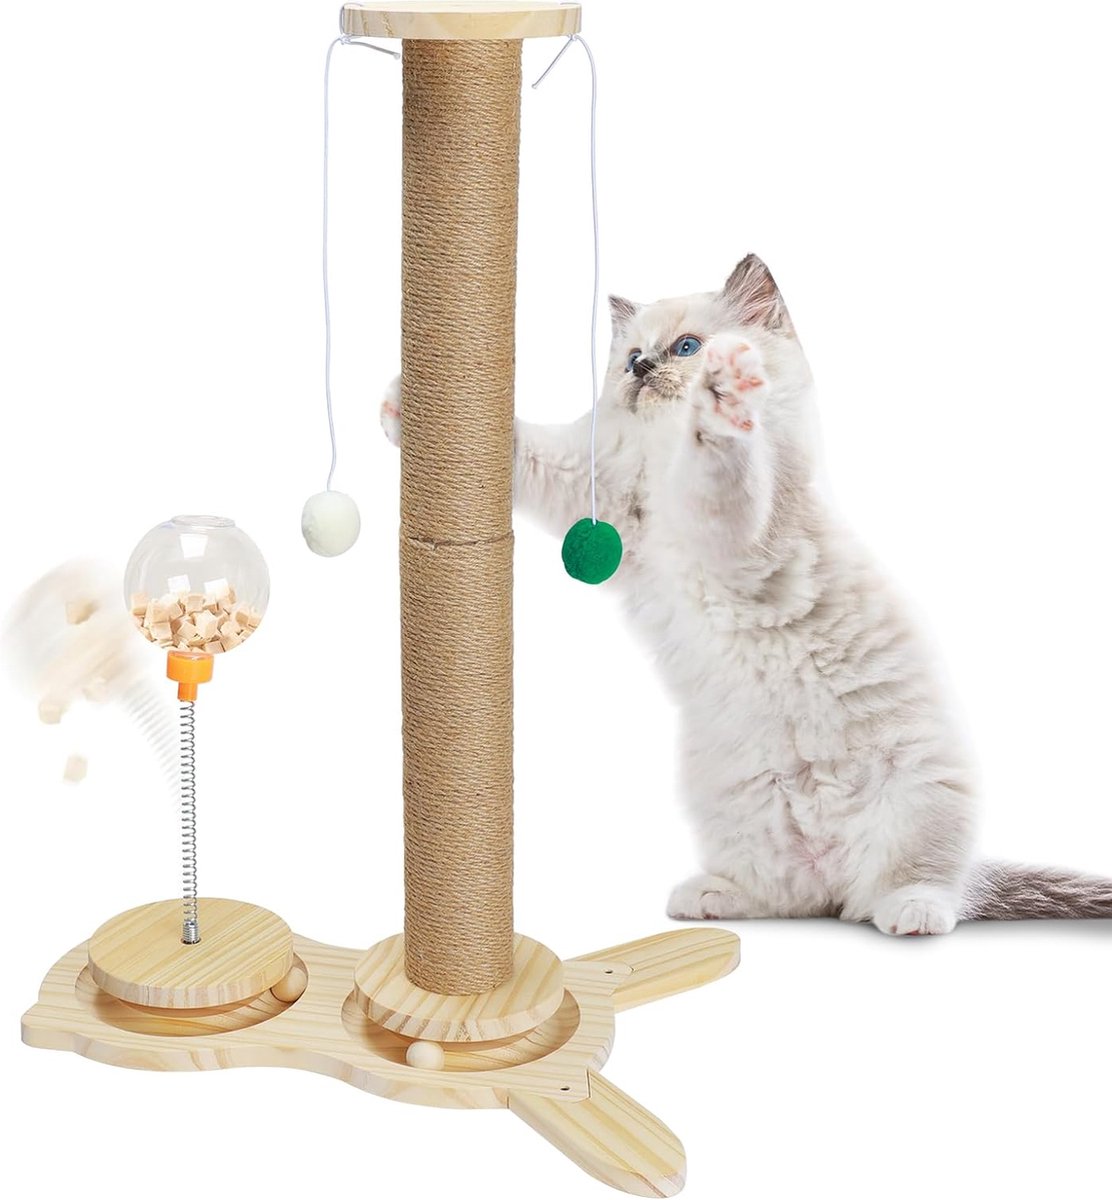 Kat krabpaal groot, interactief kattenspeelgoed van hout, intelligent speelgoed, krabpaal met 2 interactieve ballen, sisaltouw krabpalen (hoogte 66 cm)